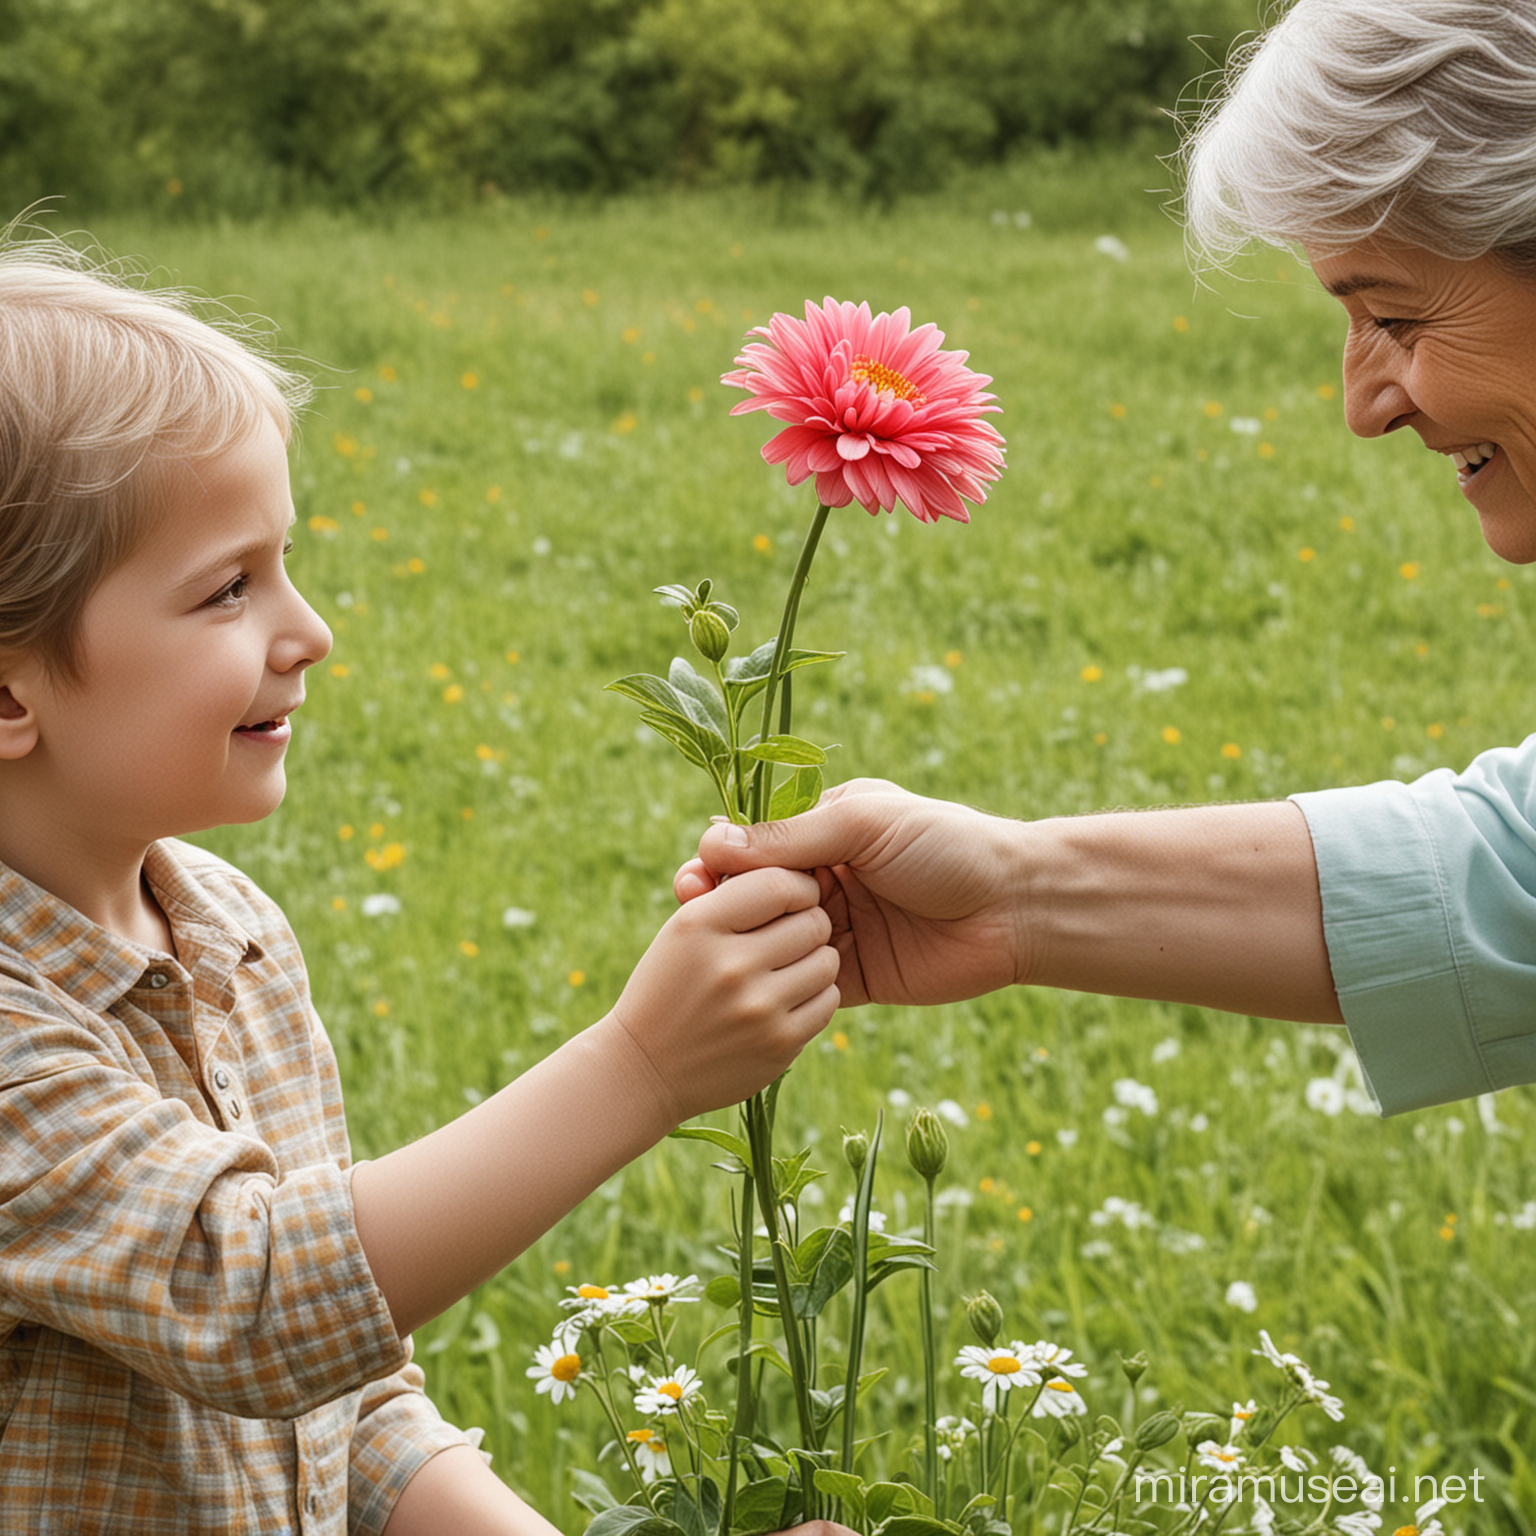 Generous Child Offering Flower to Elderly Person